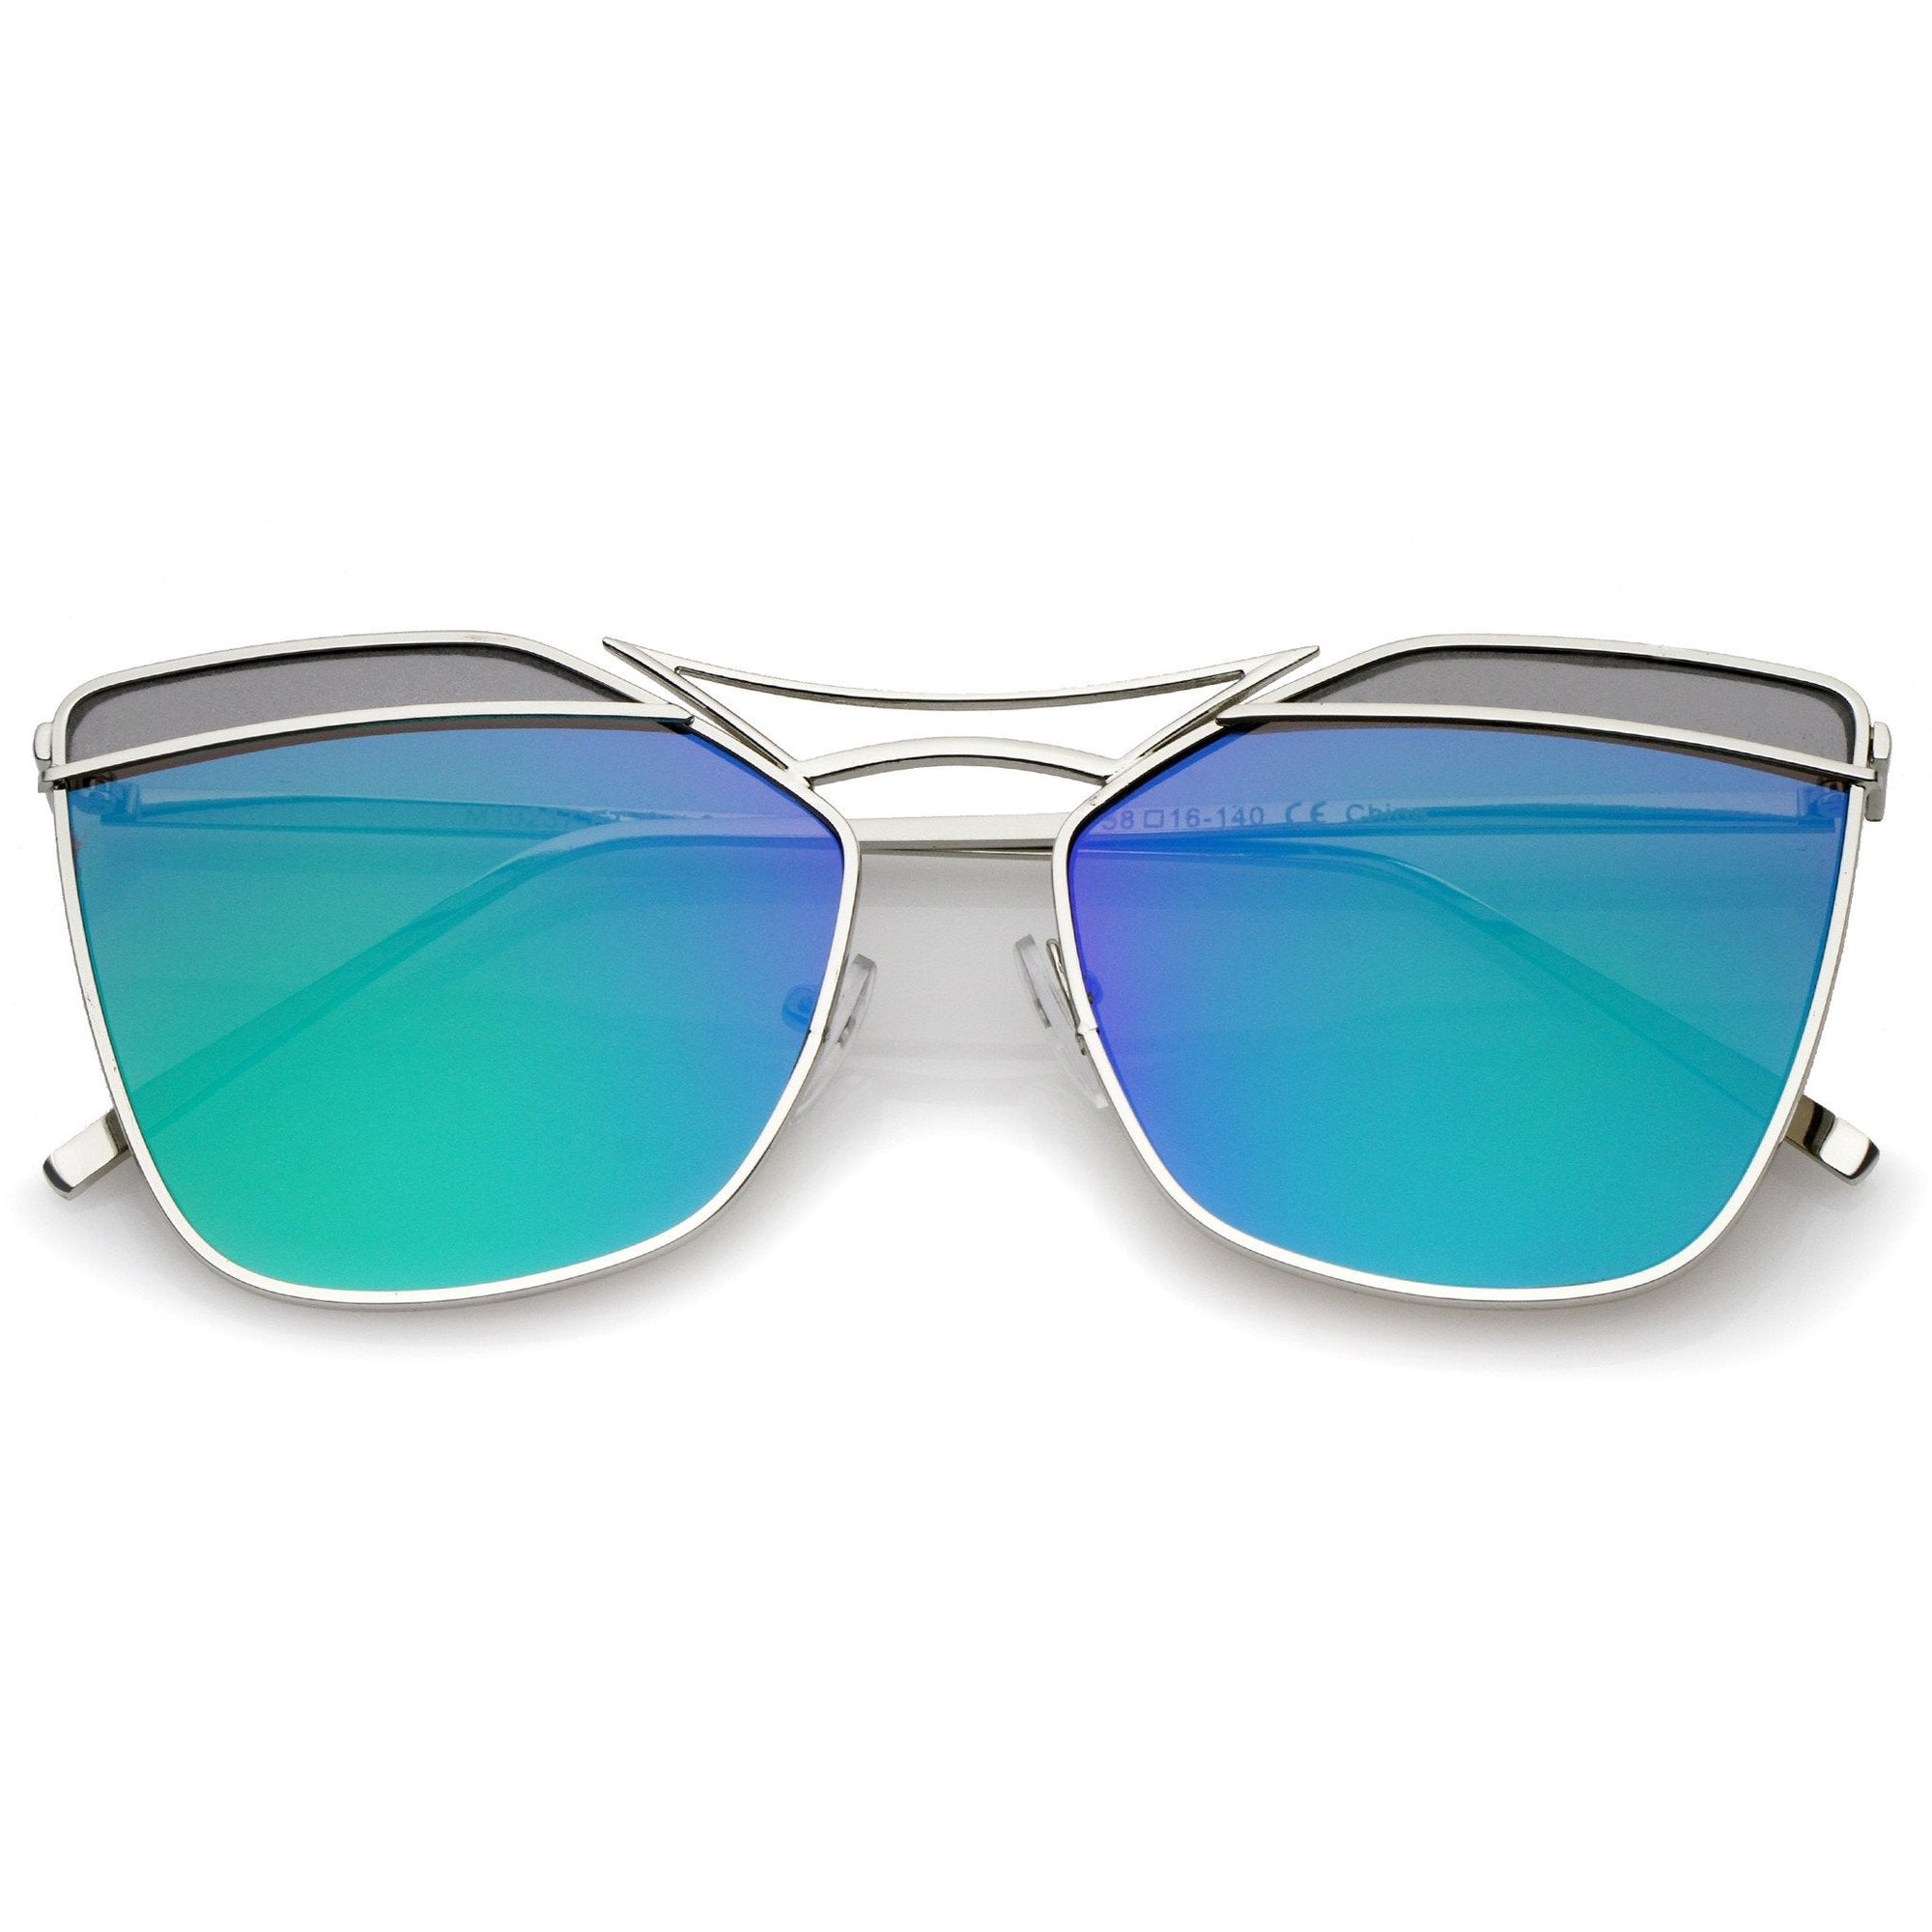 Gafas de sol con lentes planas dobles cortadas con láser para mujer A968